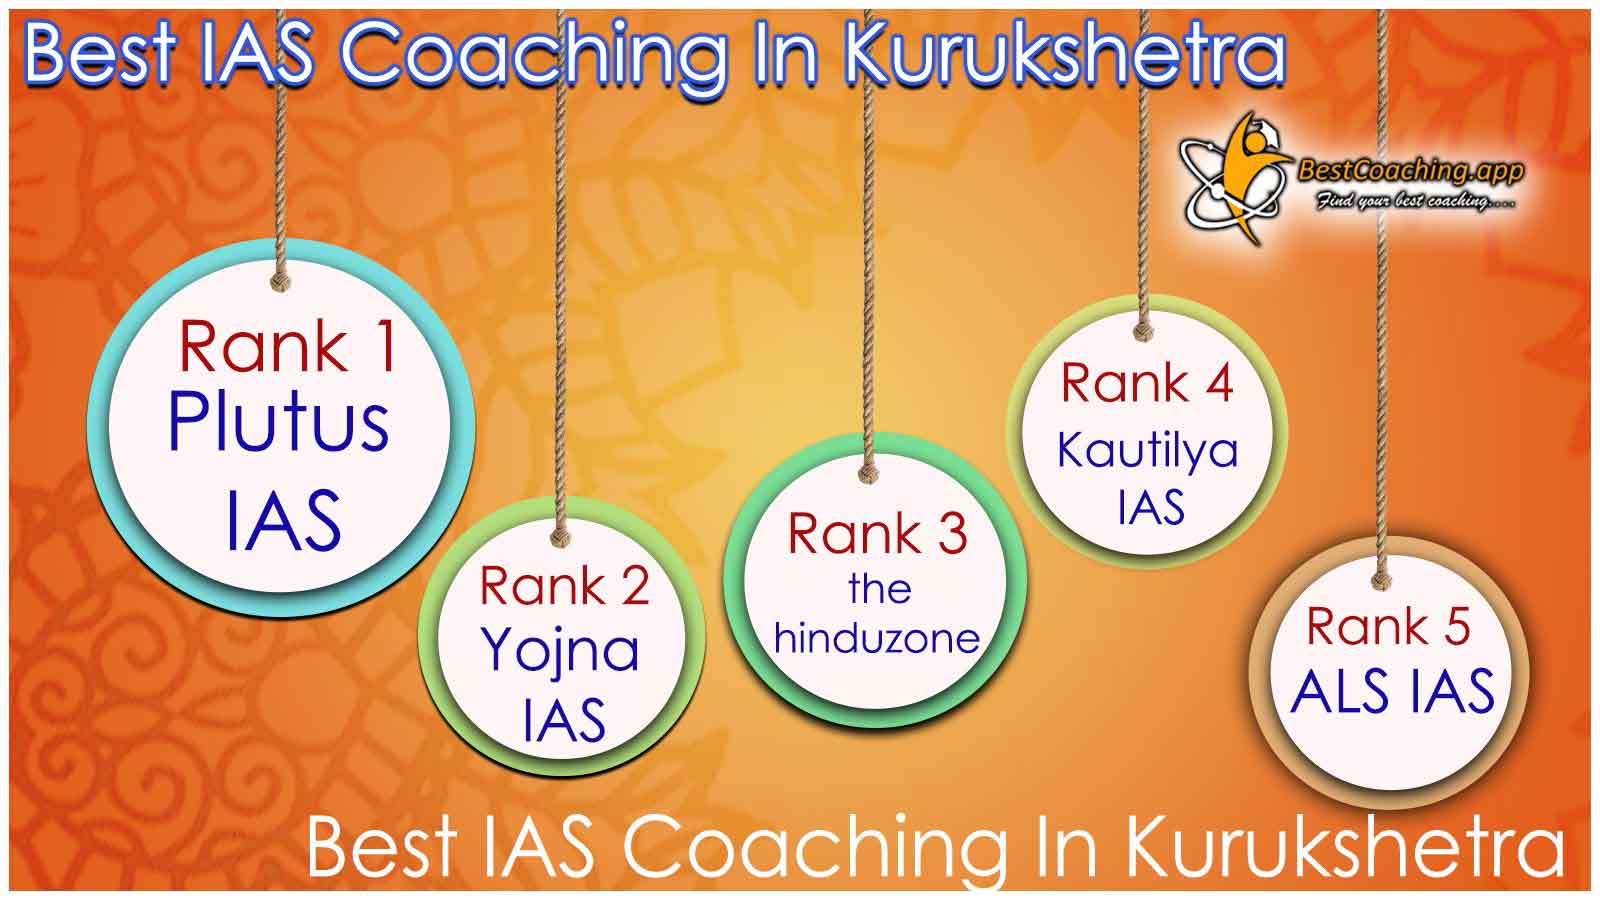 Best IAS Coaching in Kurukshetra